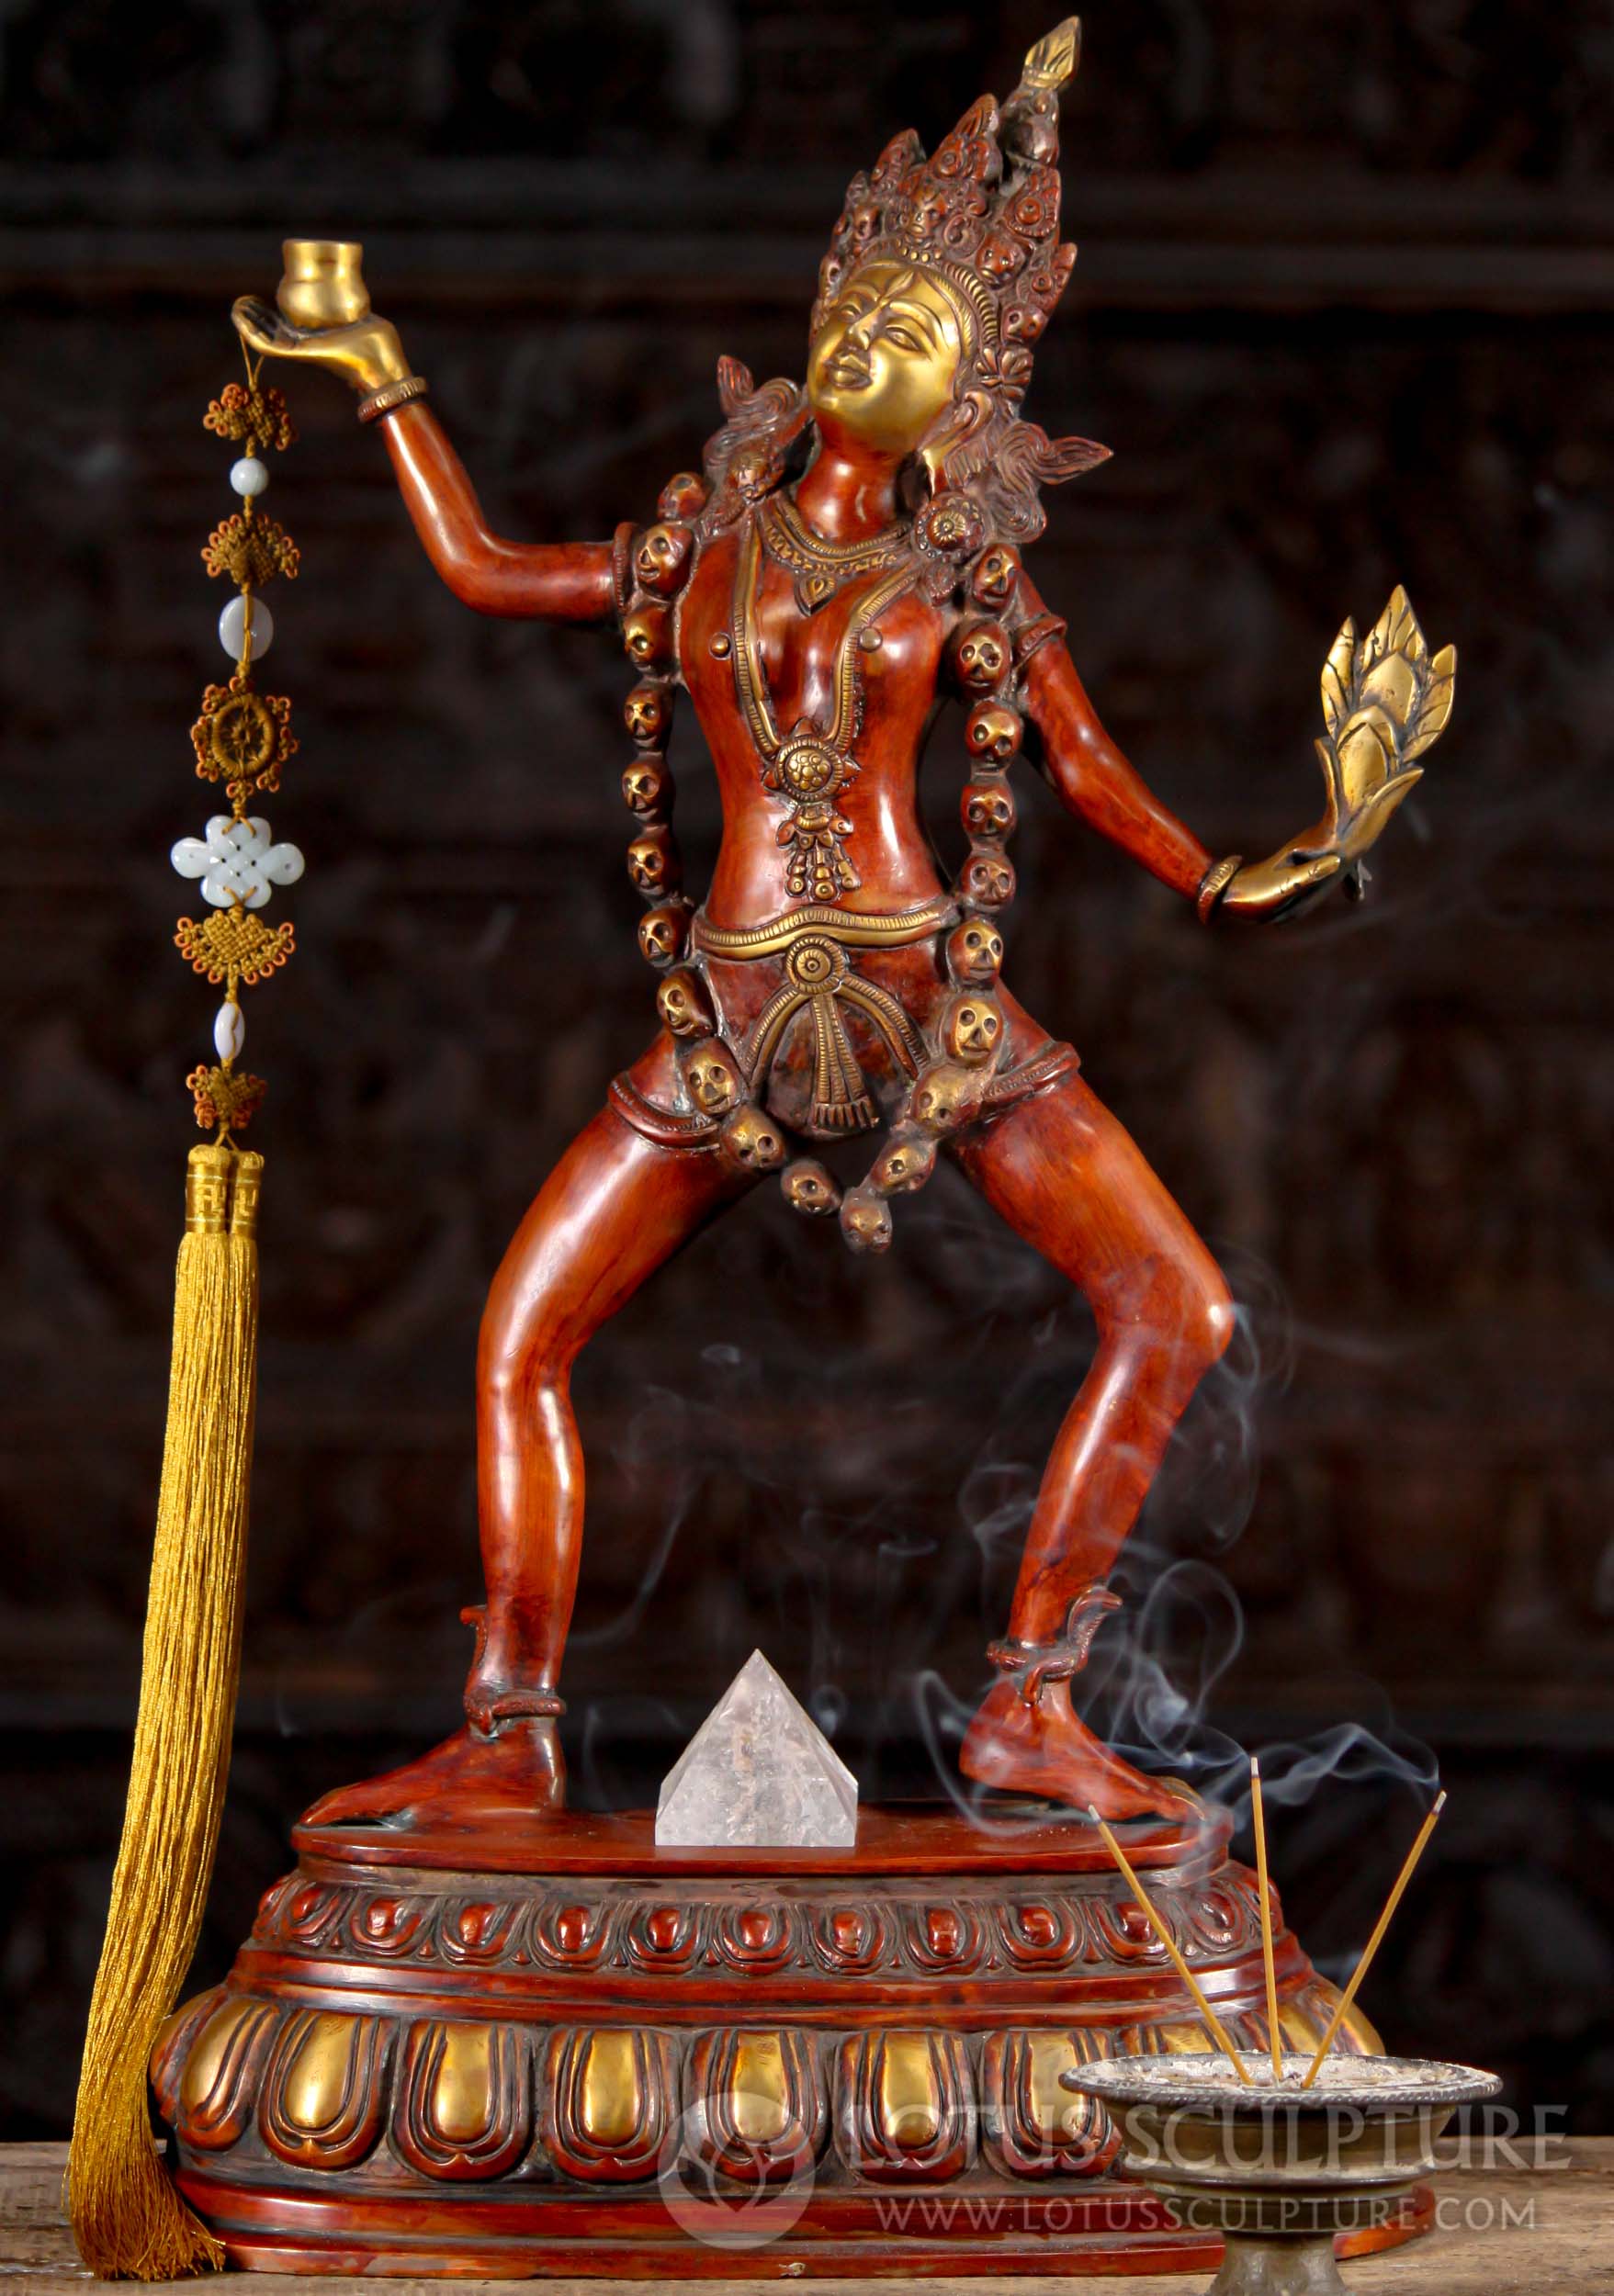 Brass Sculpture of the Hindu Goddess Kali Dancing Wearing a Crown